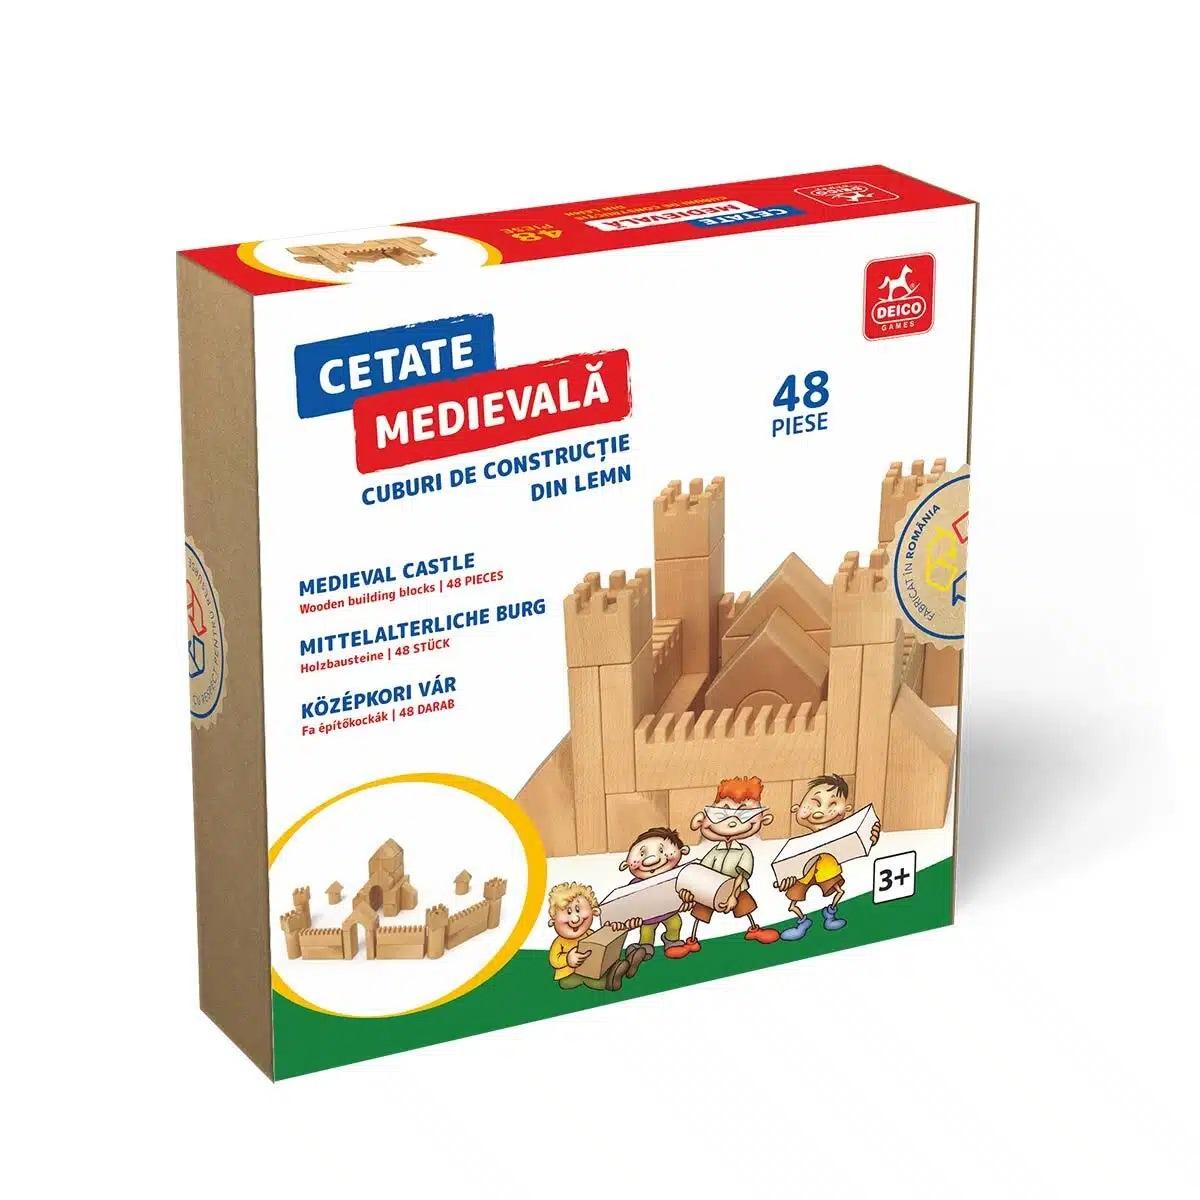  Cetate medievală – cuburi construcție